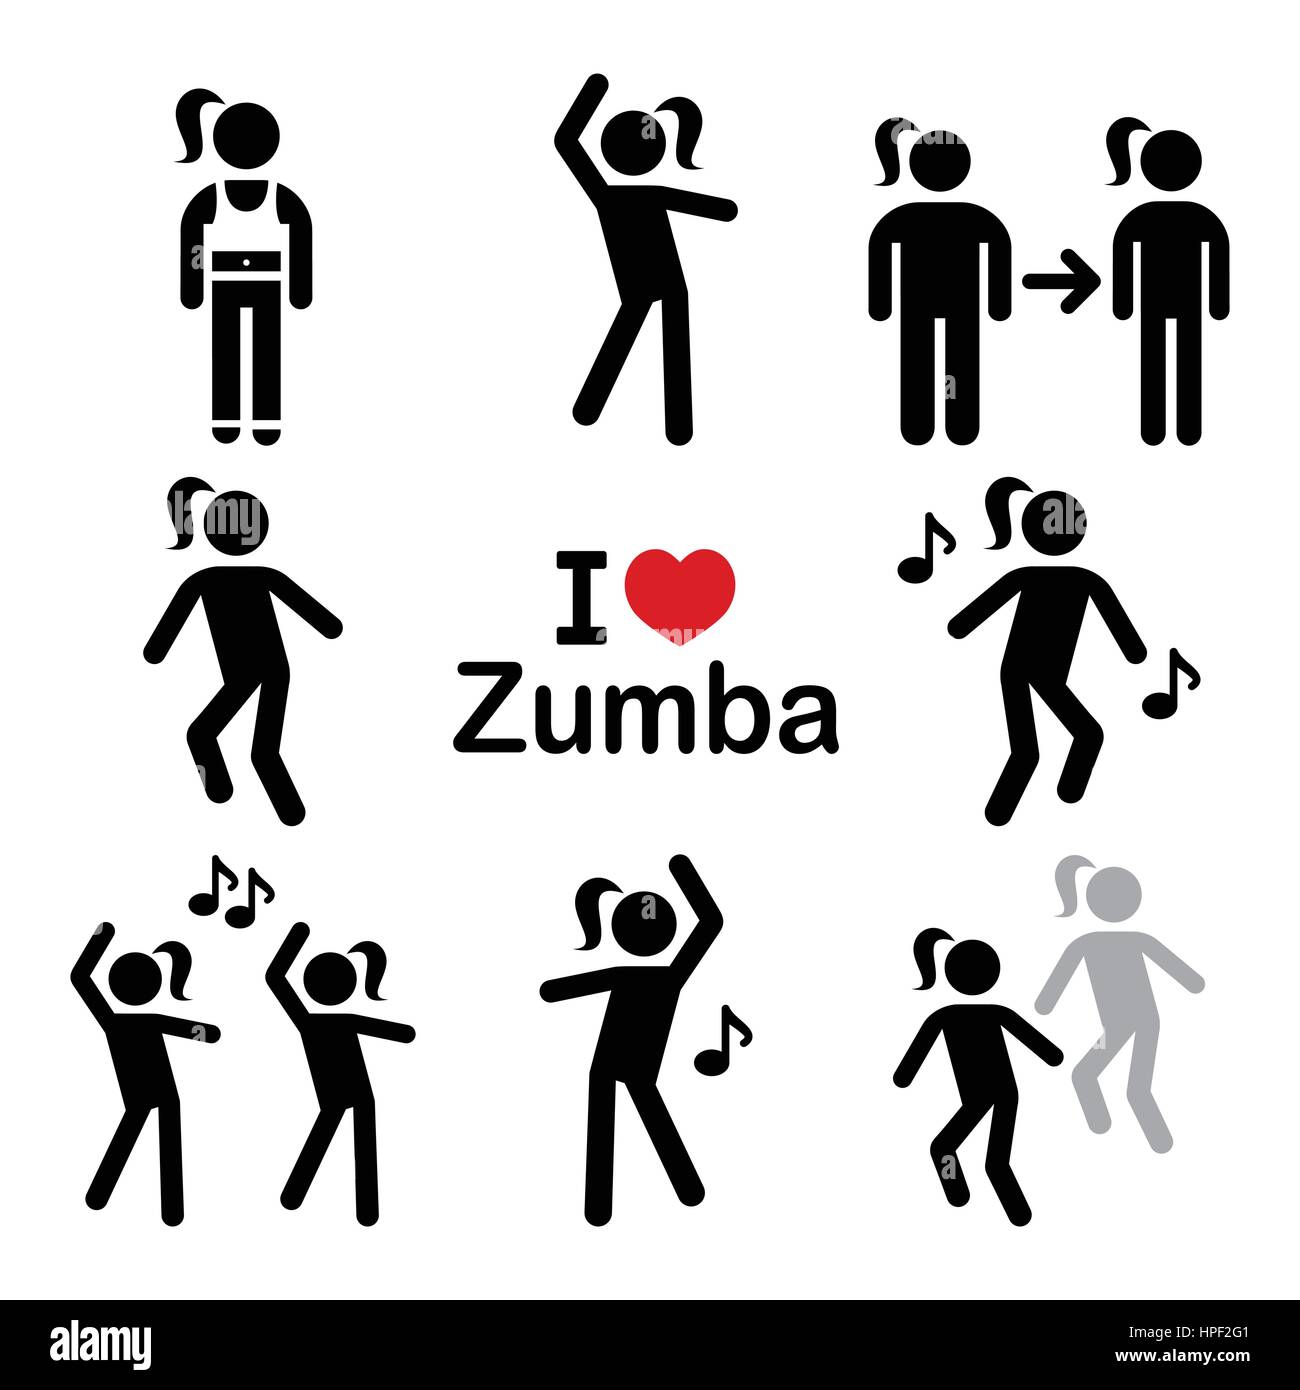 La danse Zumba Fitness workout, icons set Illustration de Vecteur